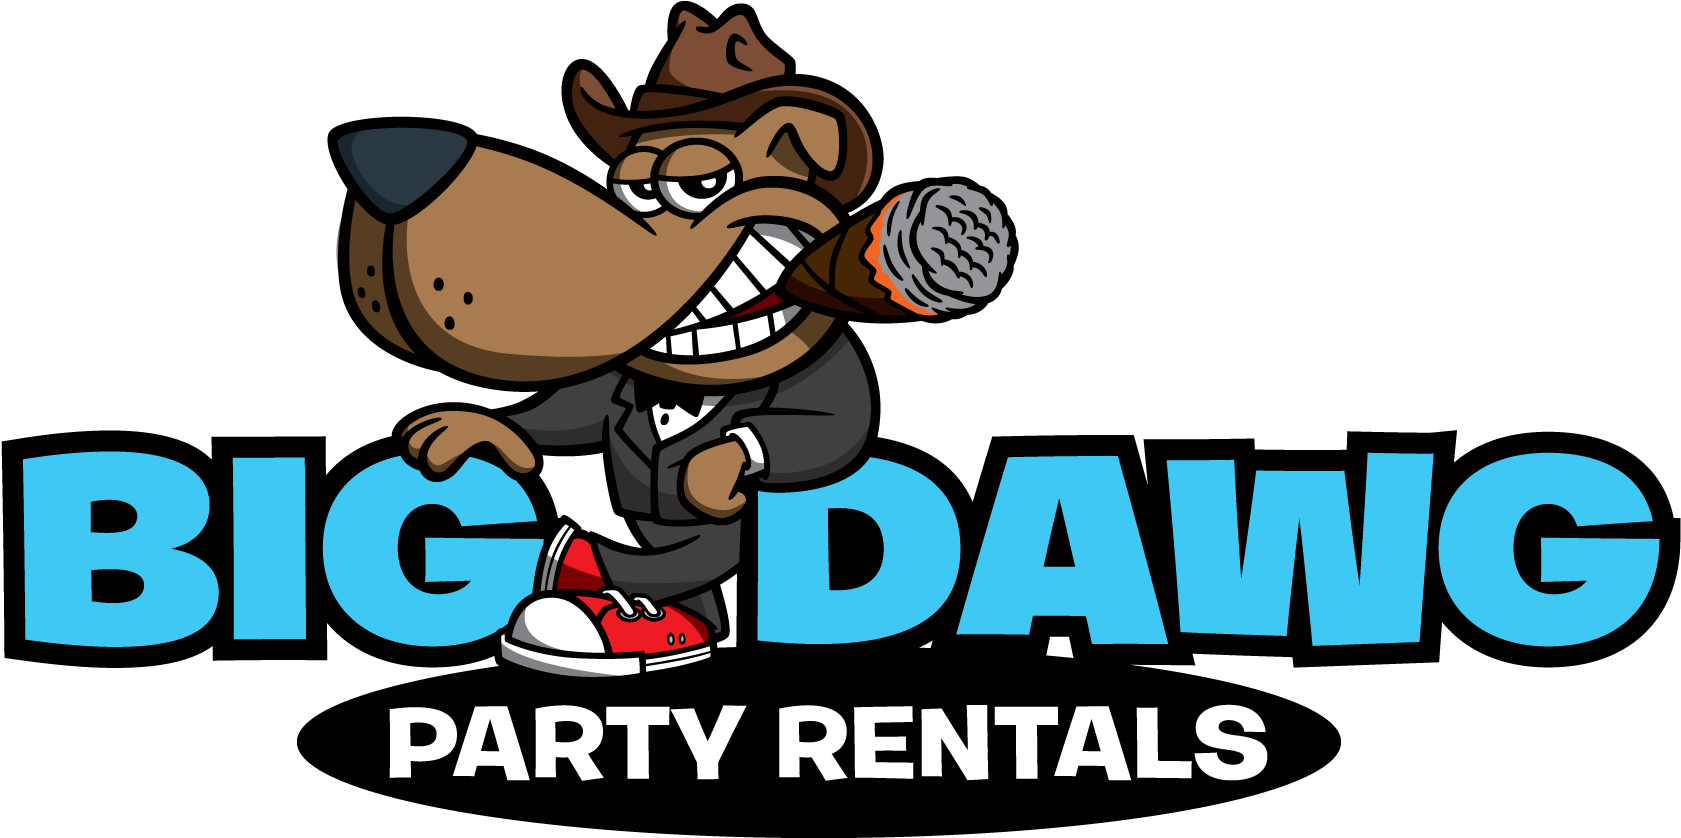 Big Dawg Party Rentals (1776x896)